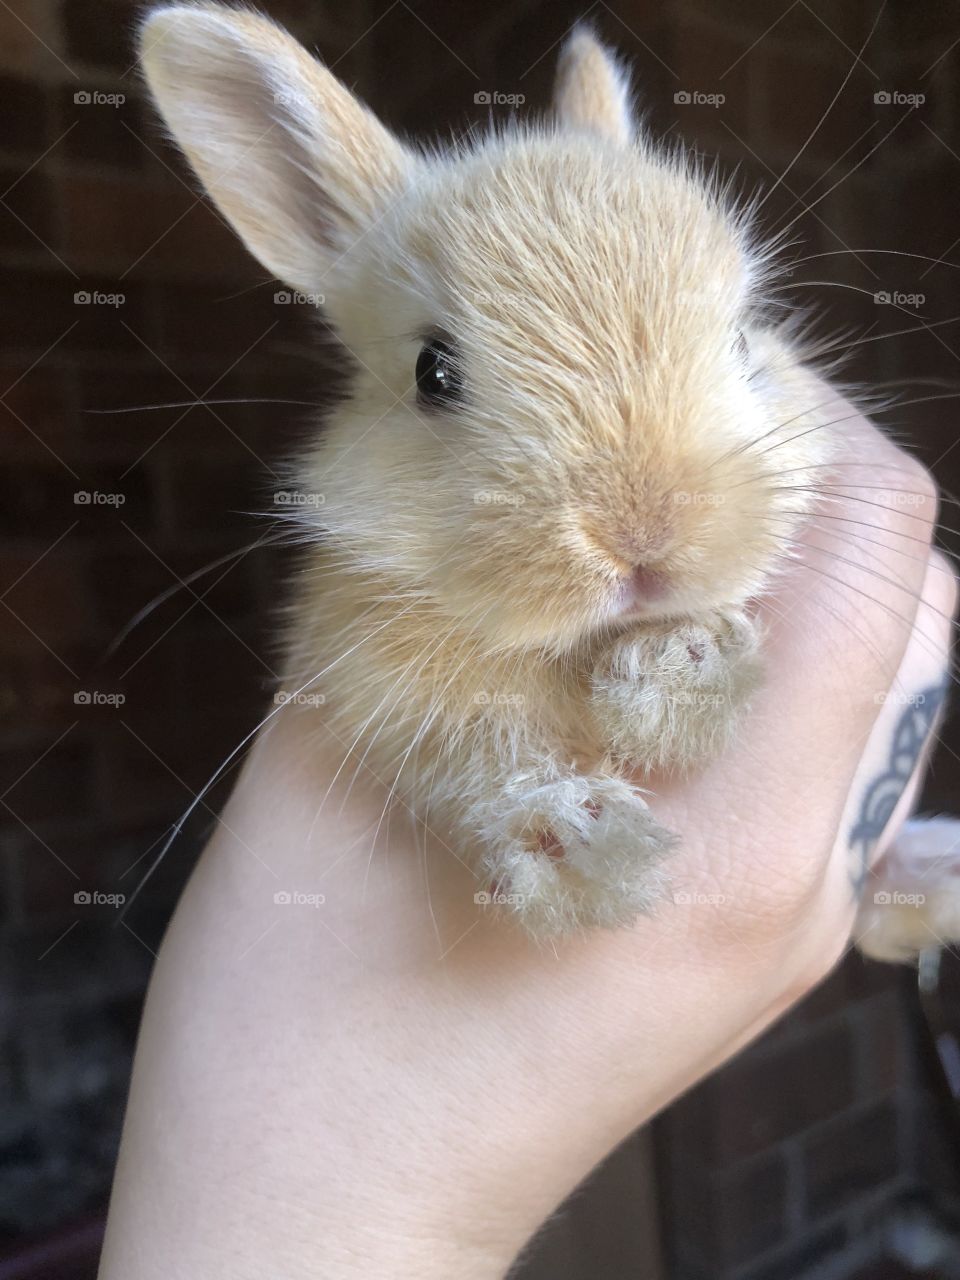 A precious baby bunny face 